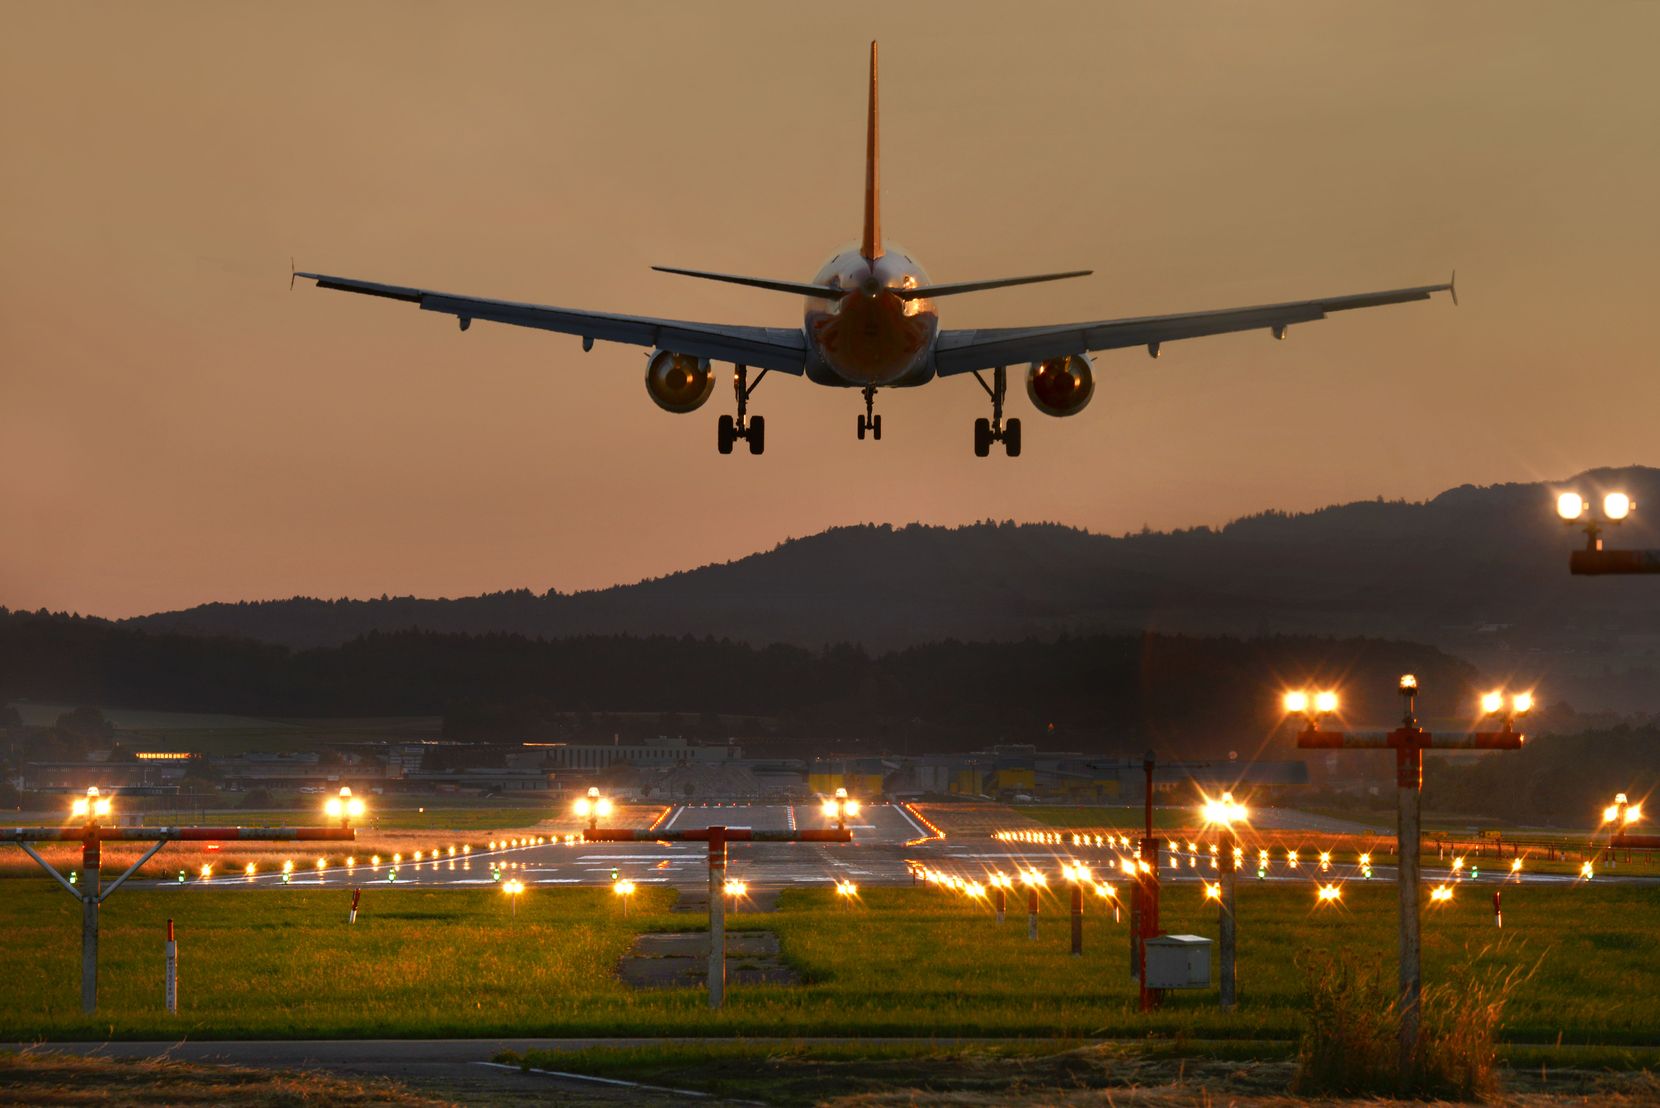 Zweistrahliges Passagierflugzeug im Landeanflug auf Piste 28 am Flughafen Zürich.